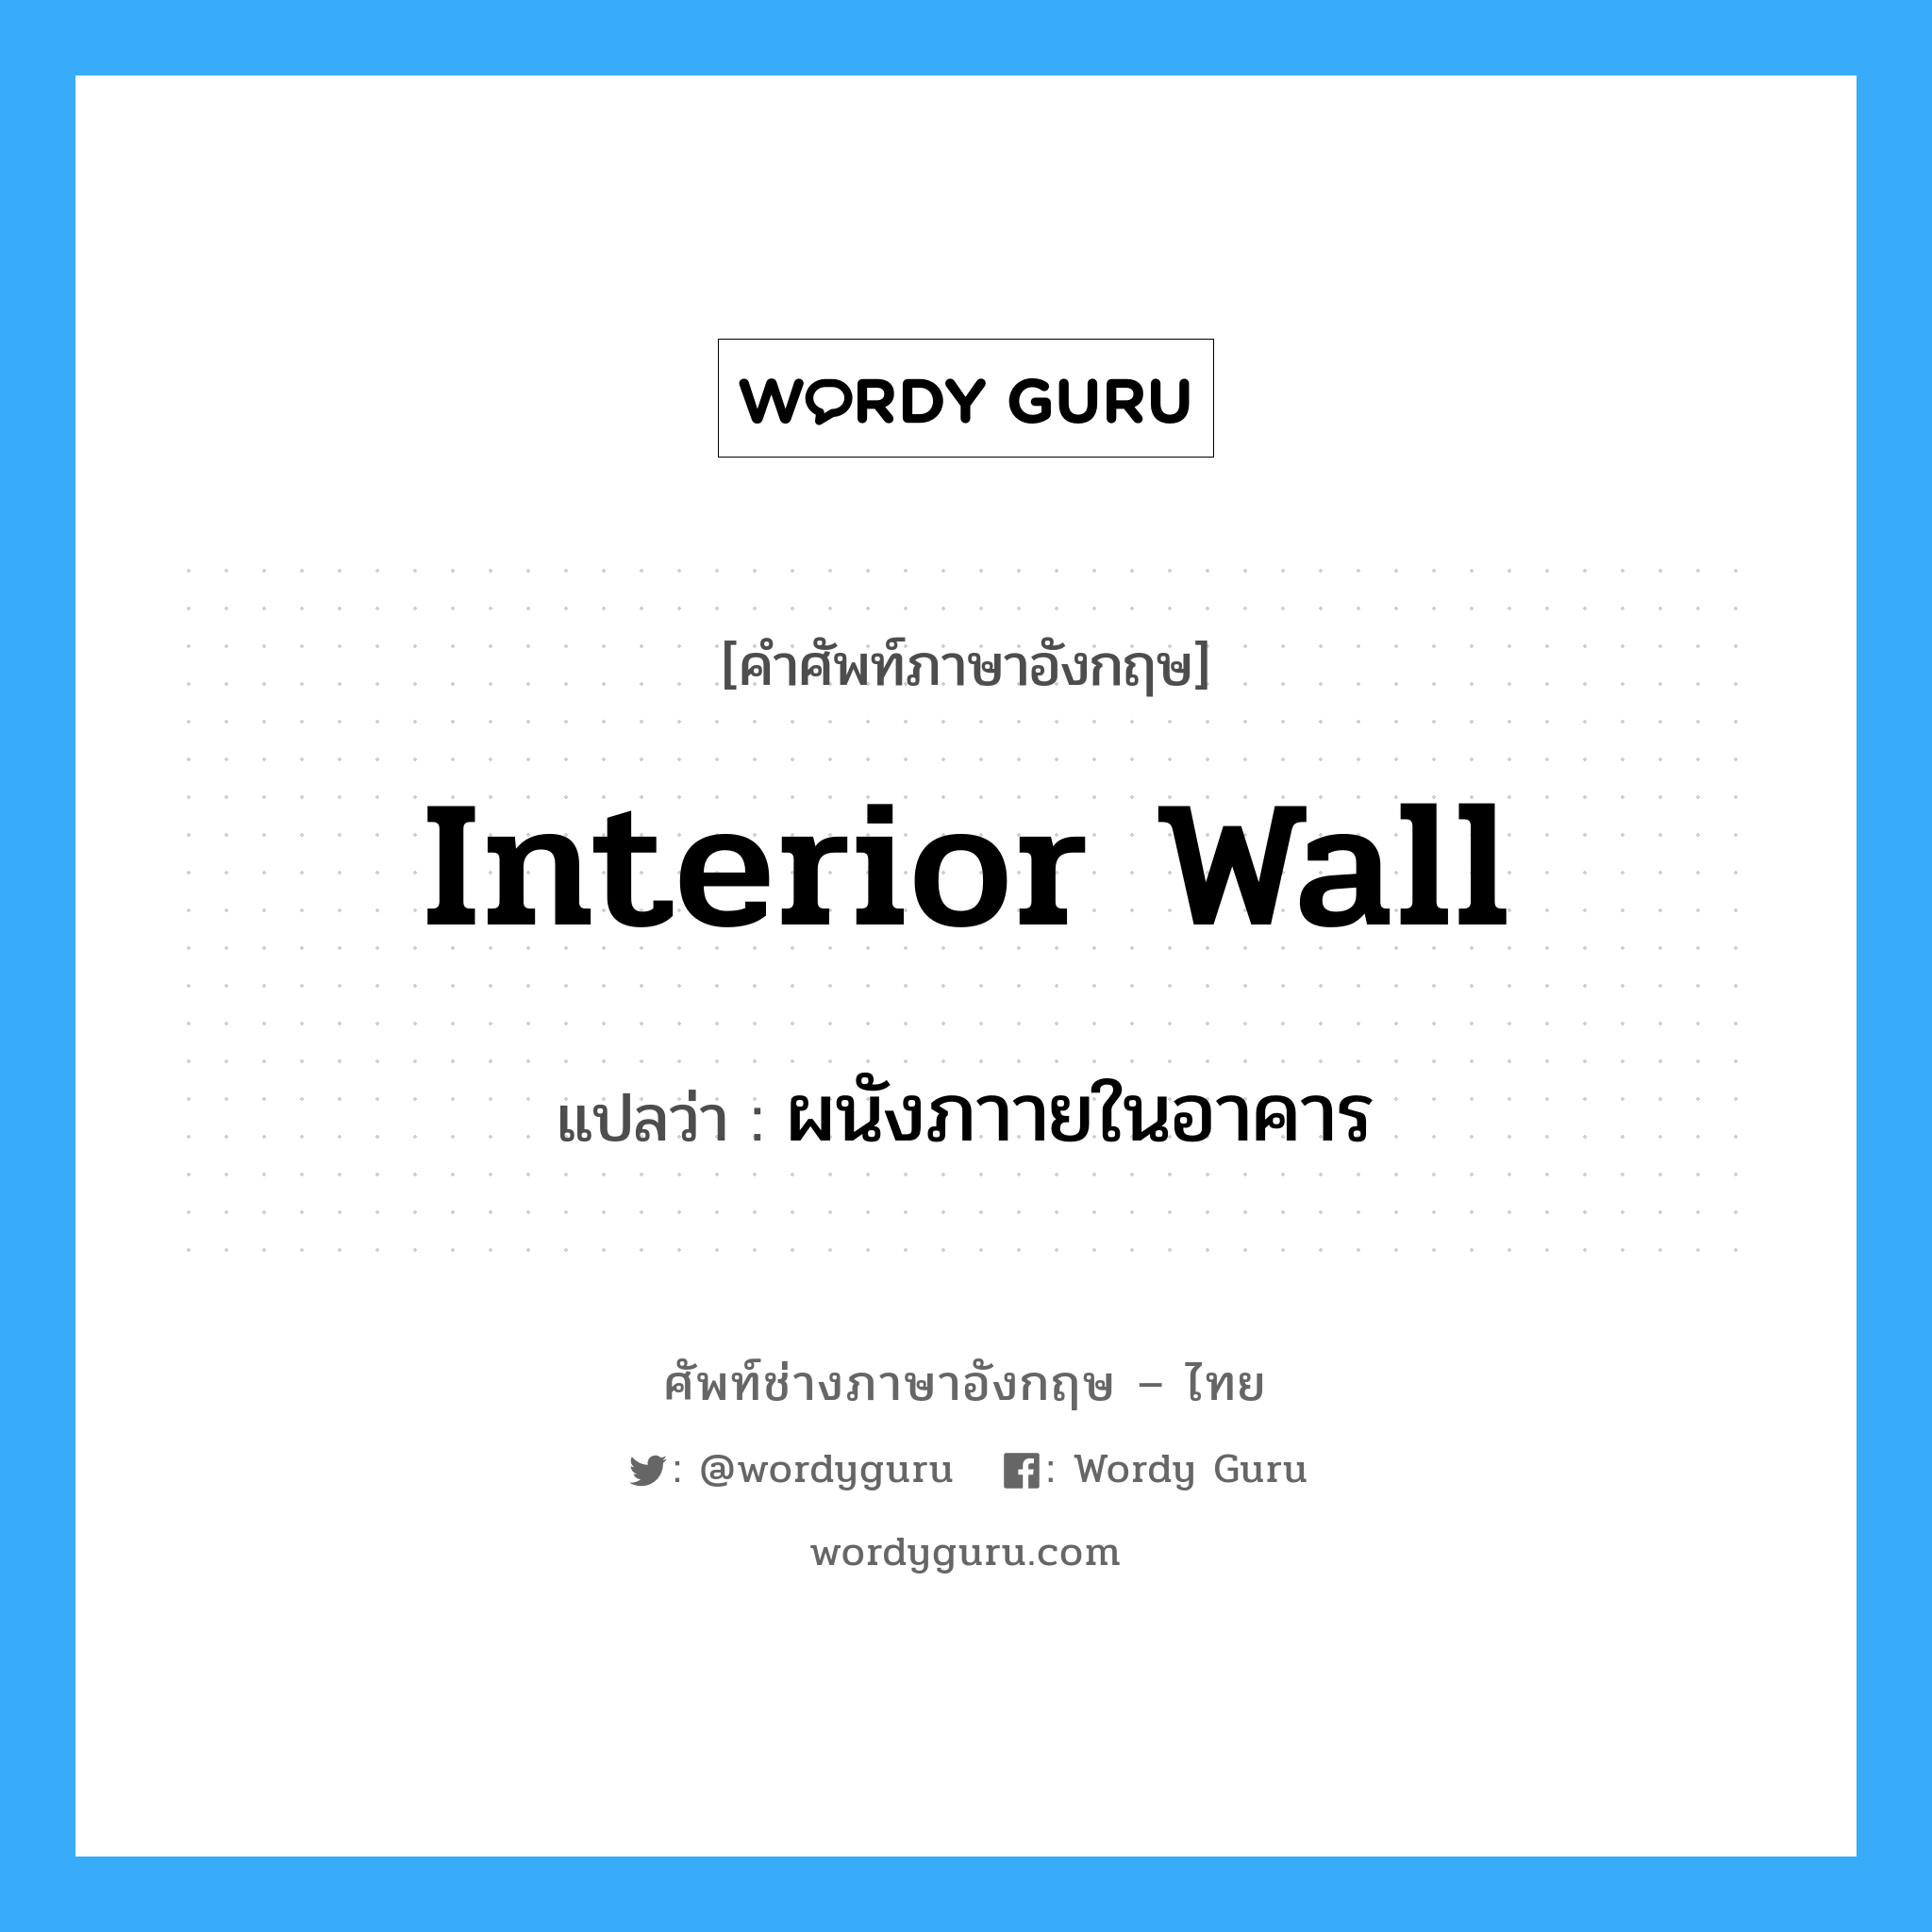 interior wall แปลว่า?, คำศัพท์ช่างภาษาอังกฤษ - ไทย interior wall คำศัพท์ภาษาอังกฤษ interior wall แปลว่า ผนังภาายในอาคาร